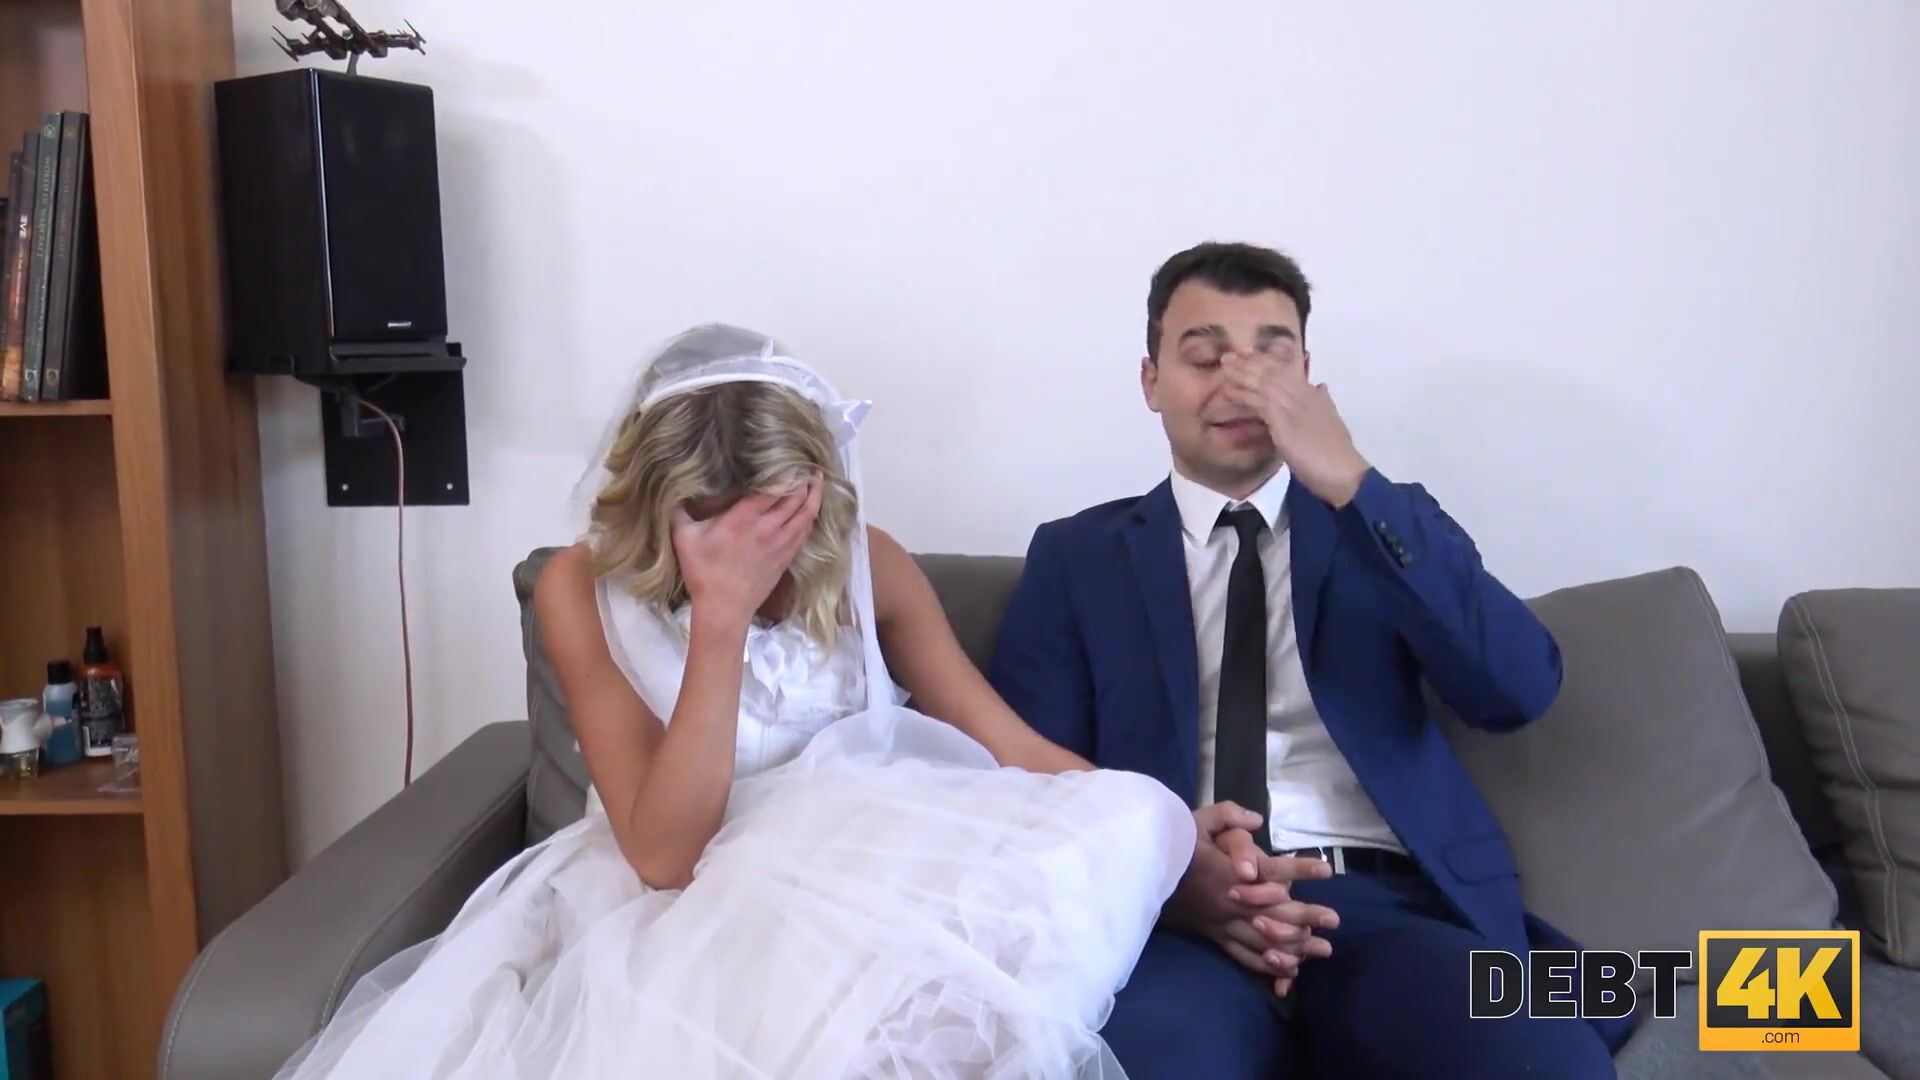 Порно видео после свадьбы невеста